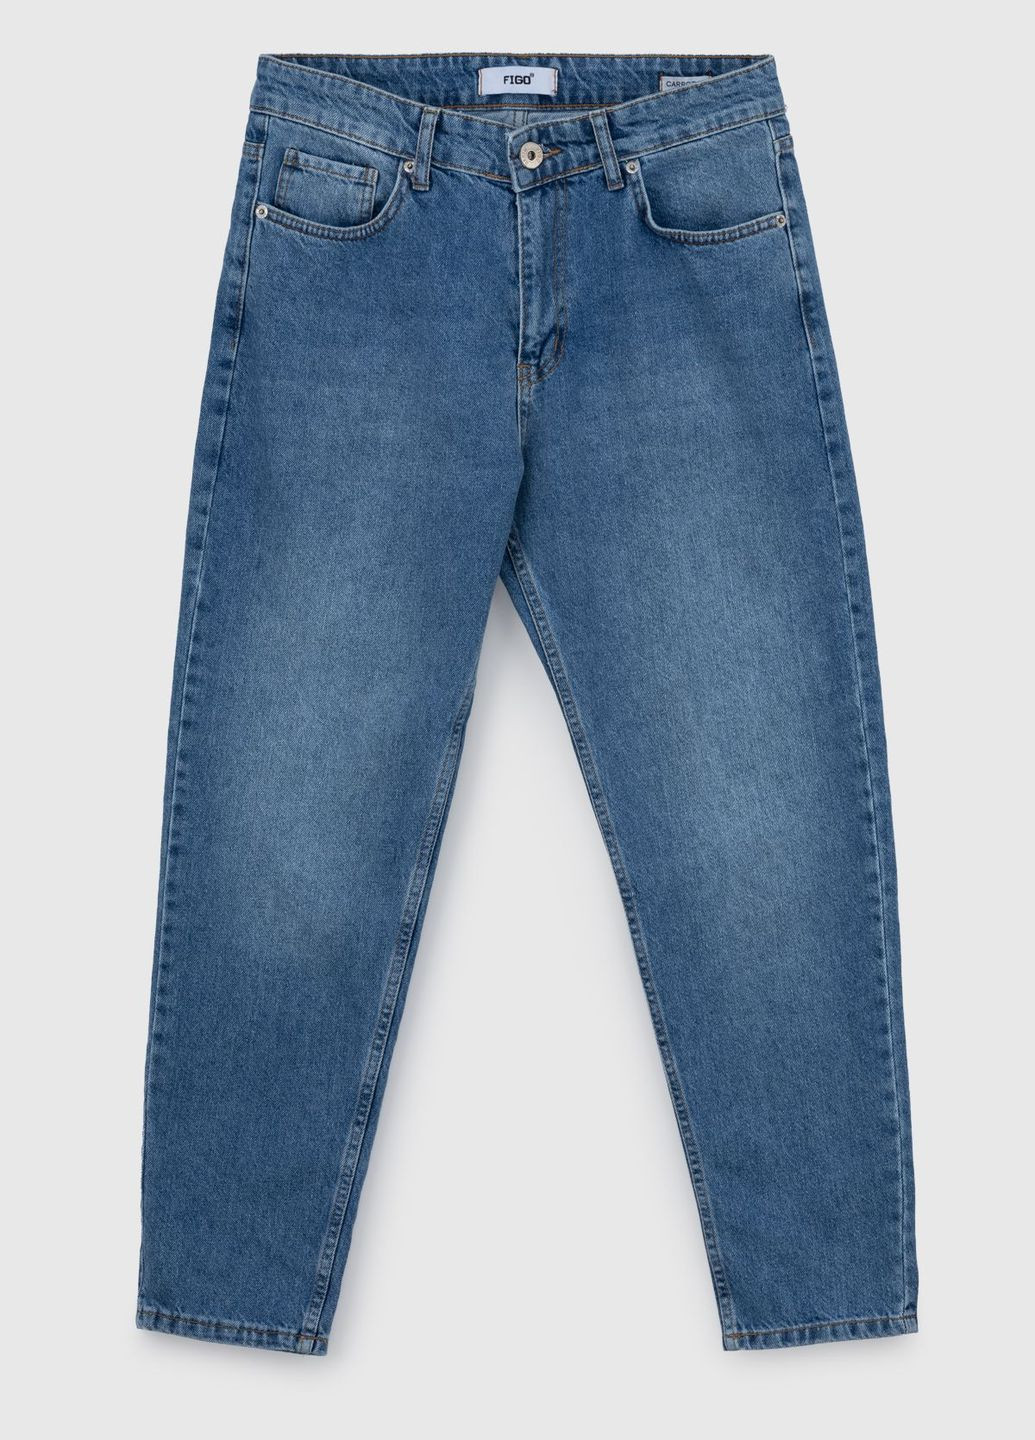 Синие демисезонные джинсы mom fit Figo